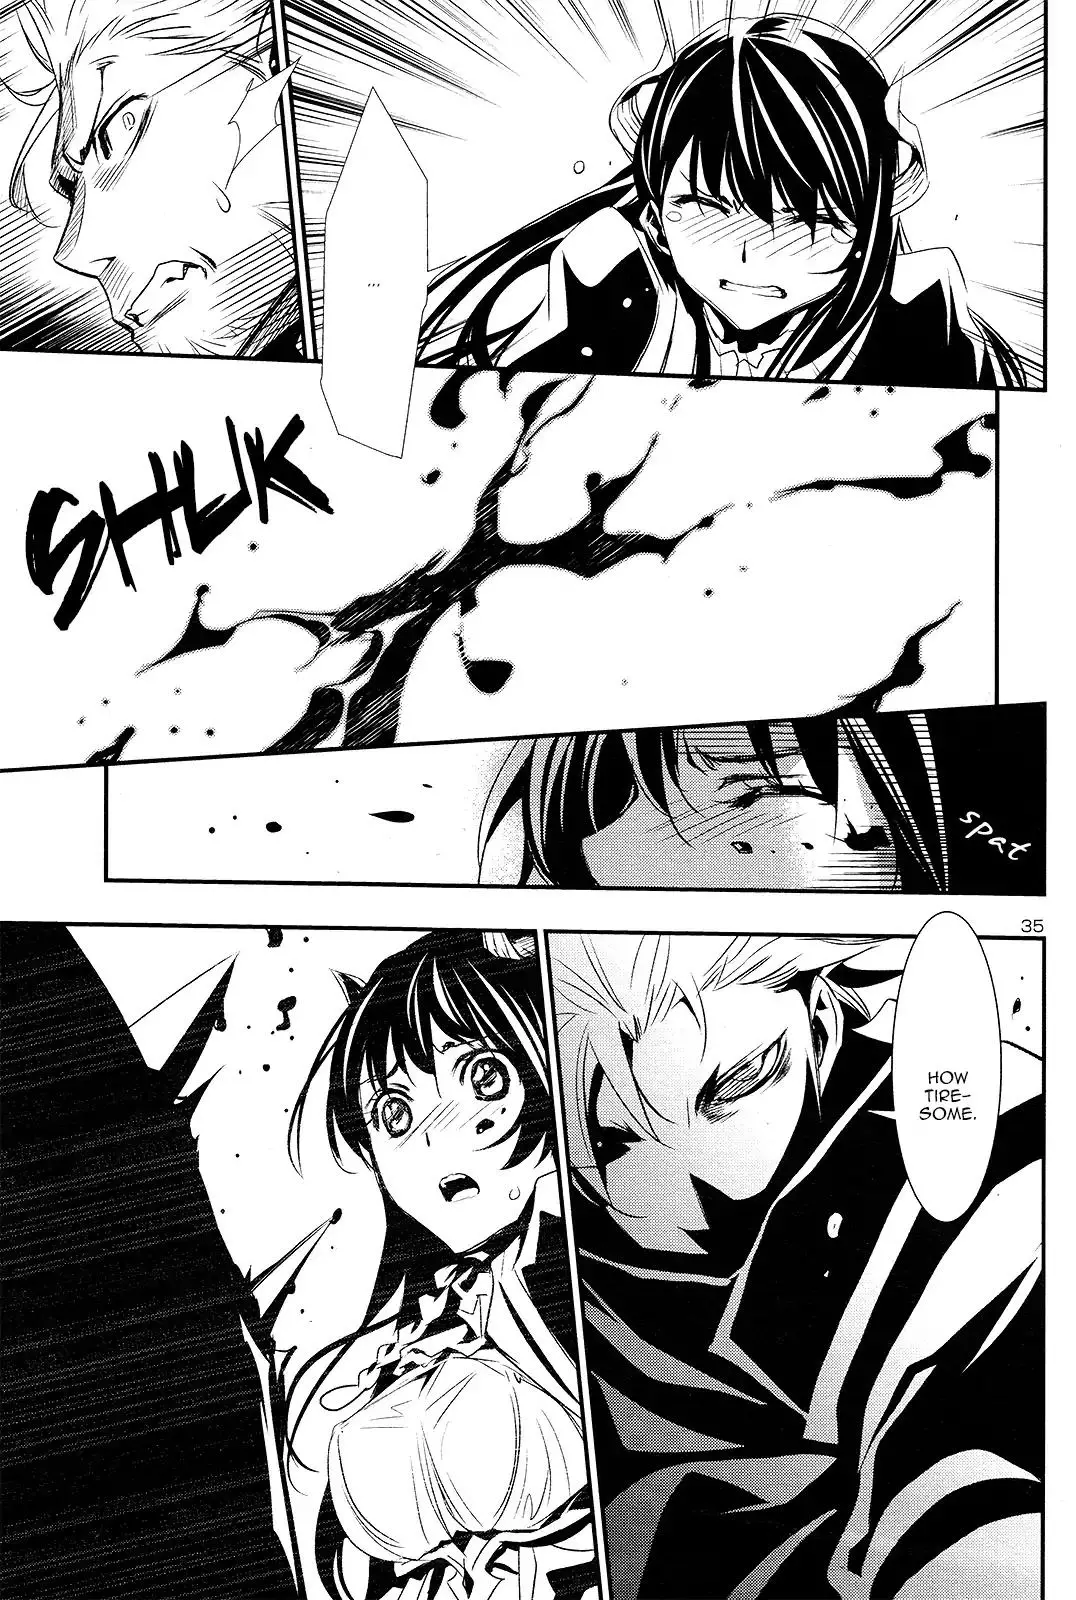 Shinju no Nectar - 1 page 35